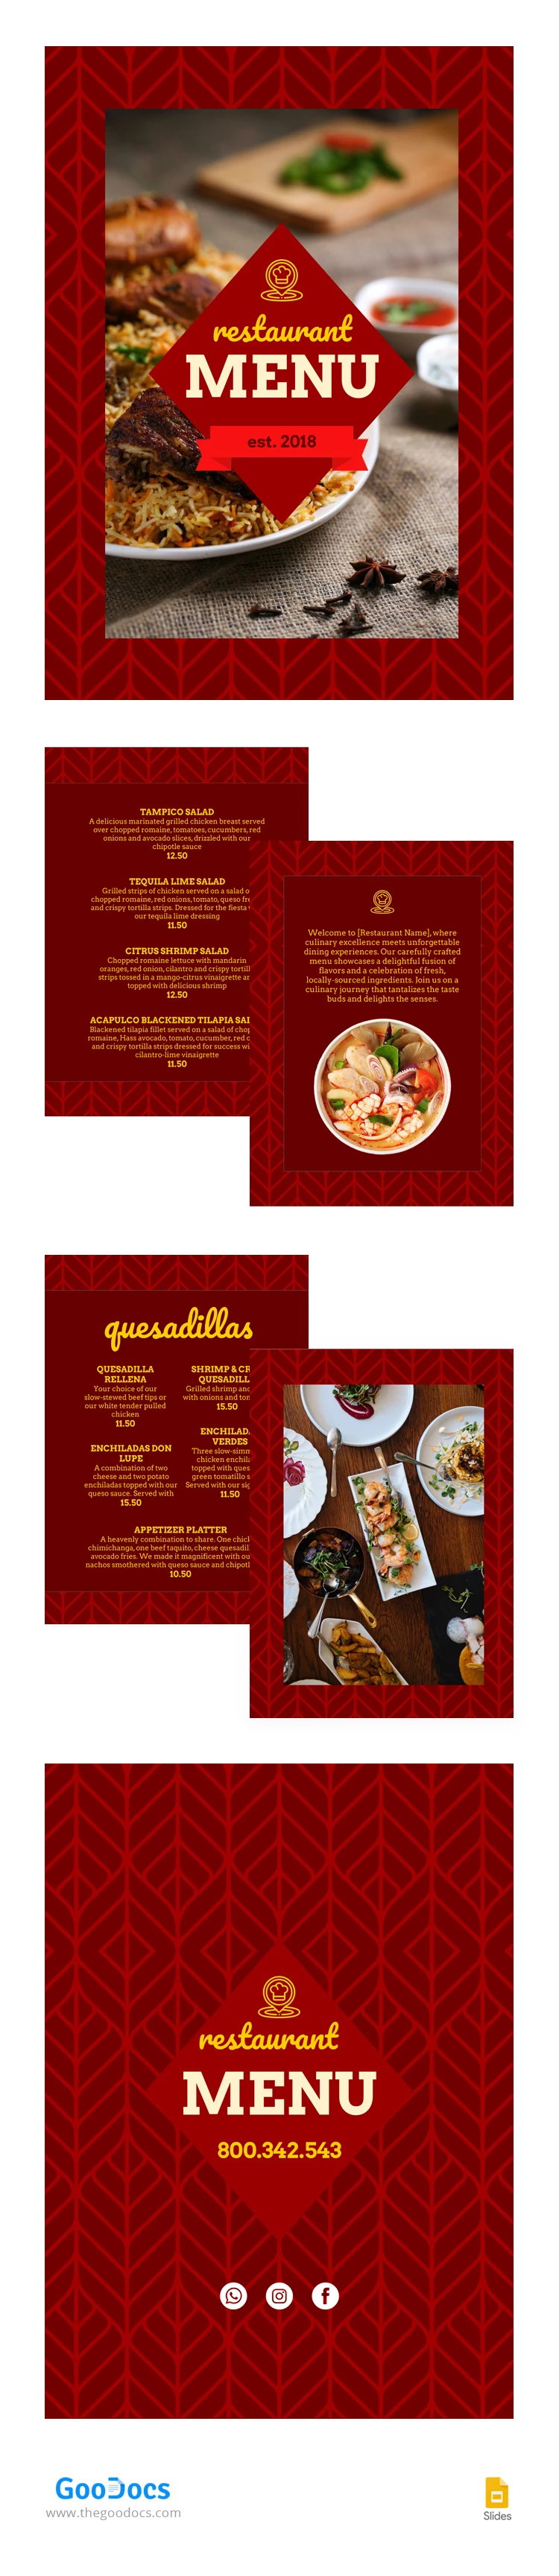 Menu Café Restaurant - free Google Docs Template - 10066606